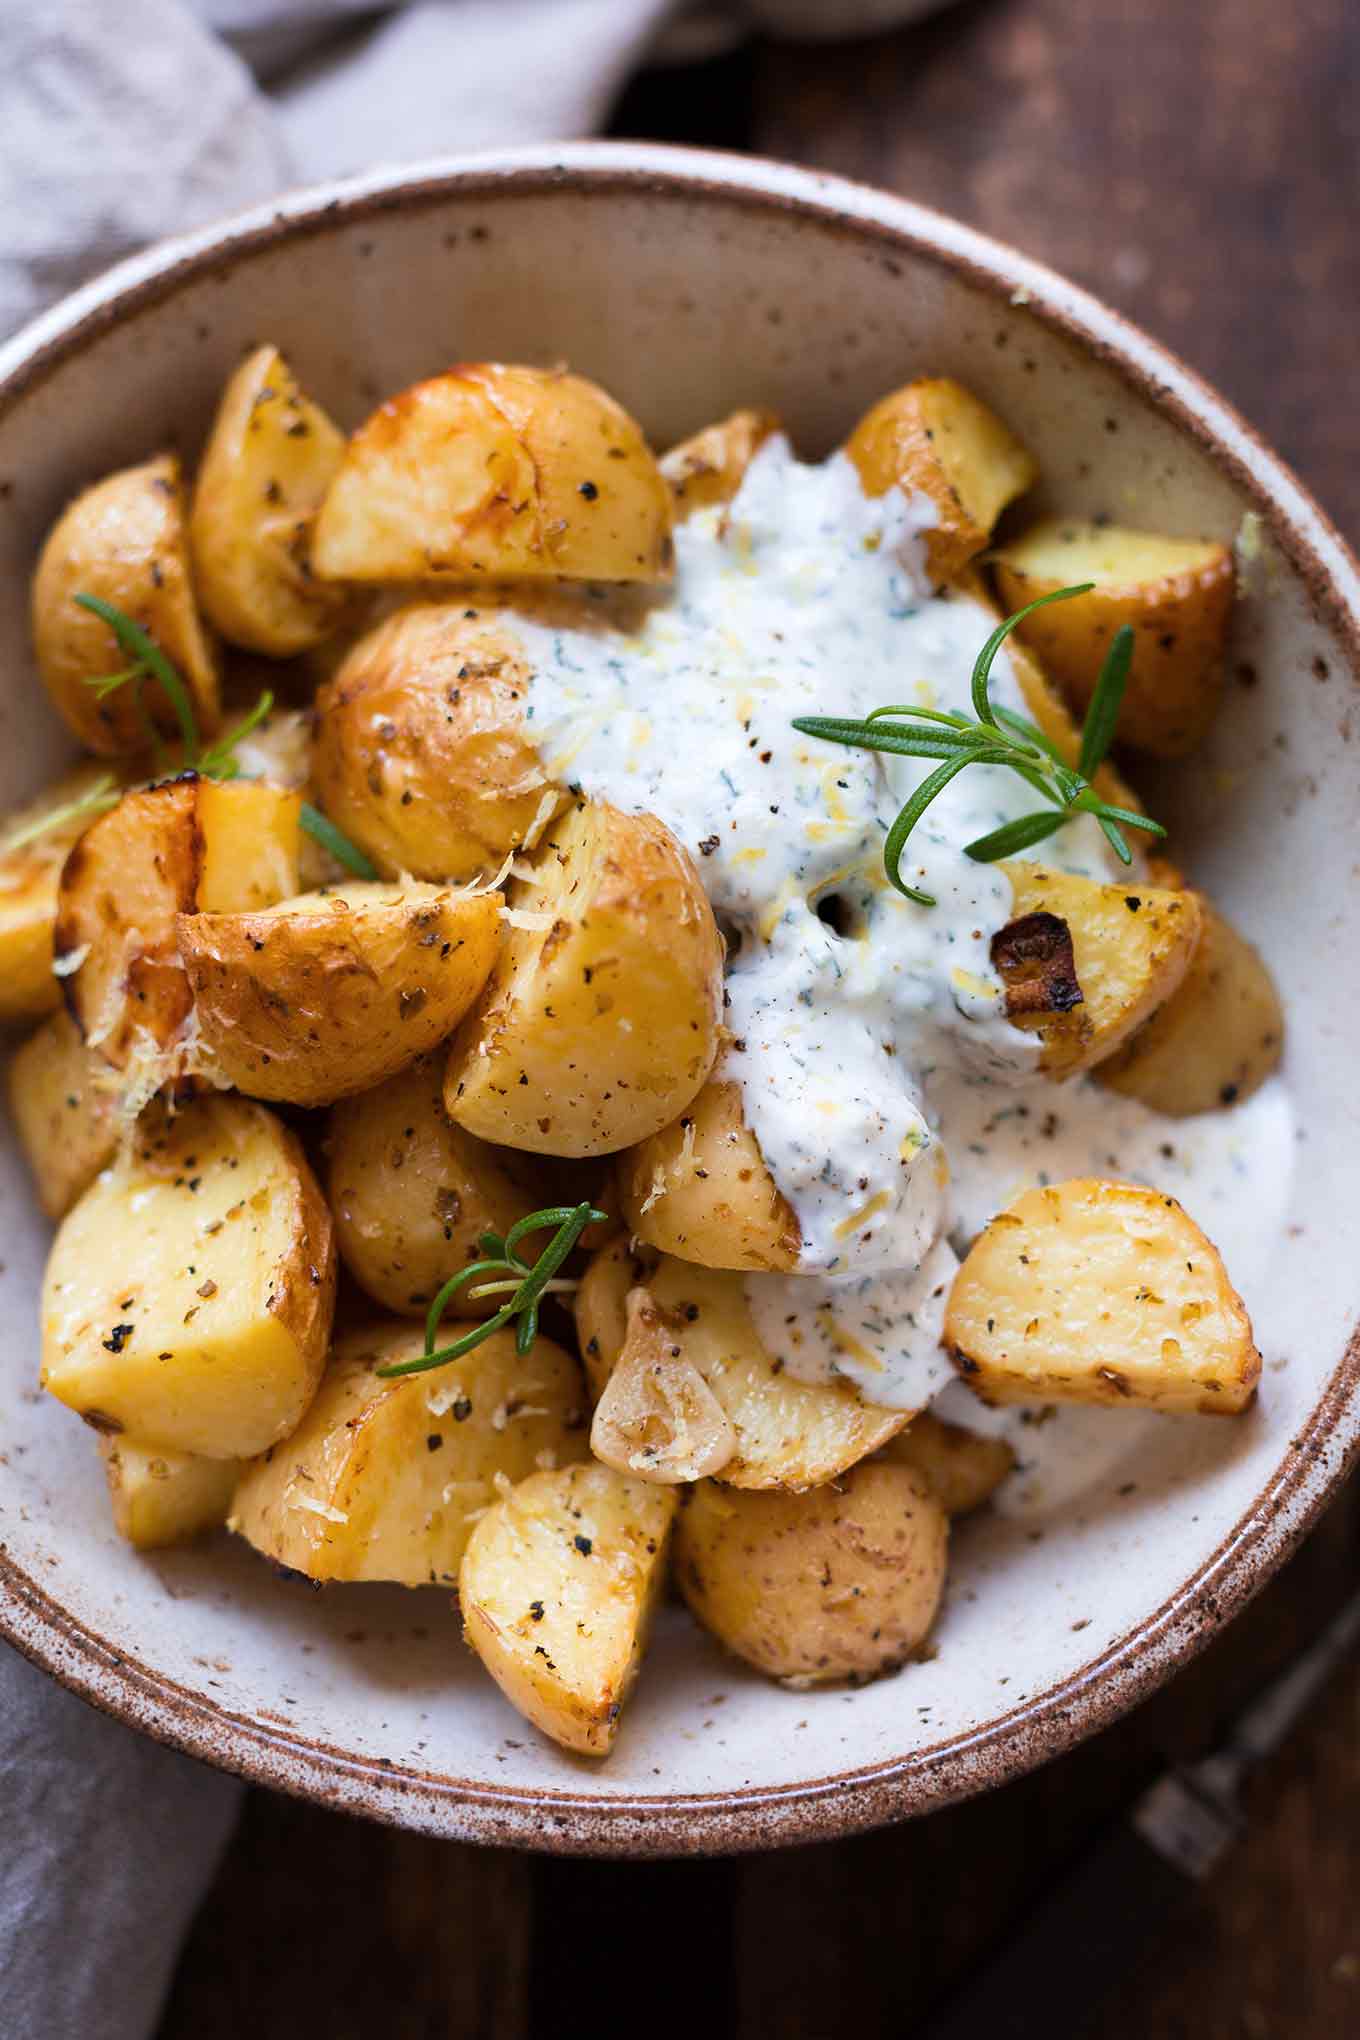 15 keine Lust zu kochen Rezepte für den Sommer. Griechische Ofenkartoffeln mit Joghurt-Feta-Dip. Dieses Rezept ist einfach und perfekt für heiße Sommertage! - Kochkarussell.com #sommer #keinelustzukochen #rezept #kochkarussell